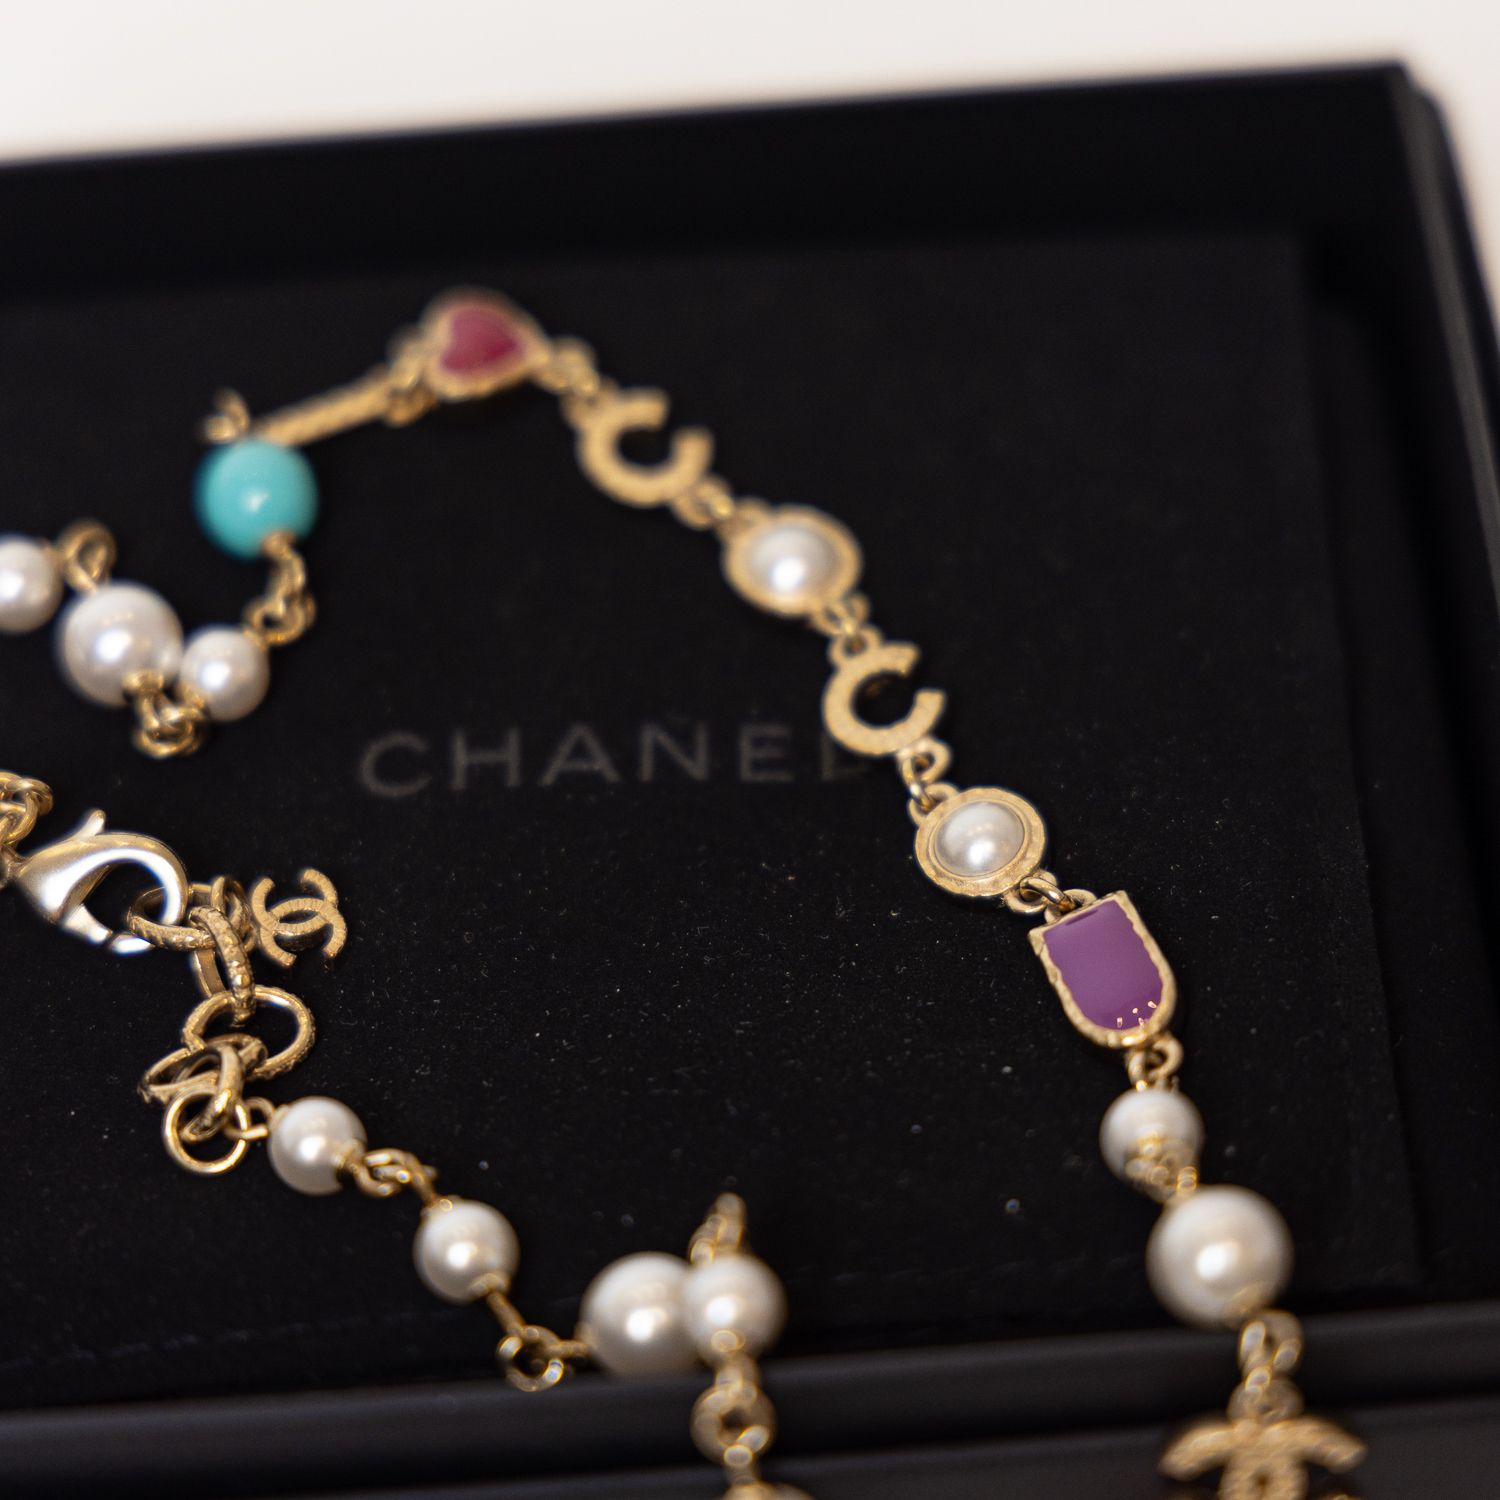 Chanel COCO Collier Kette Perlen mit OVP